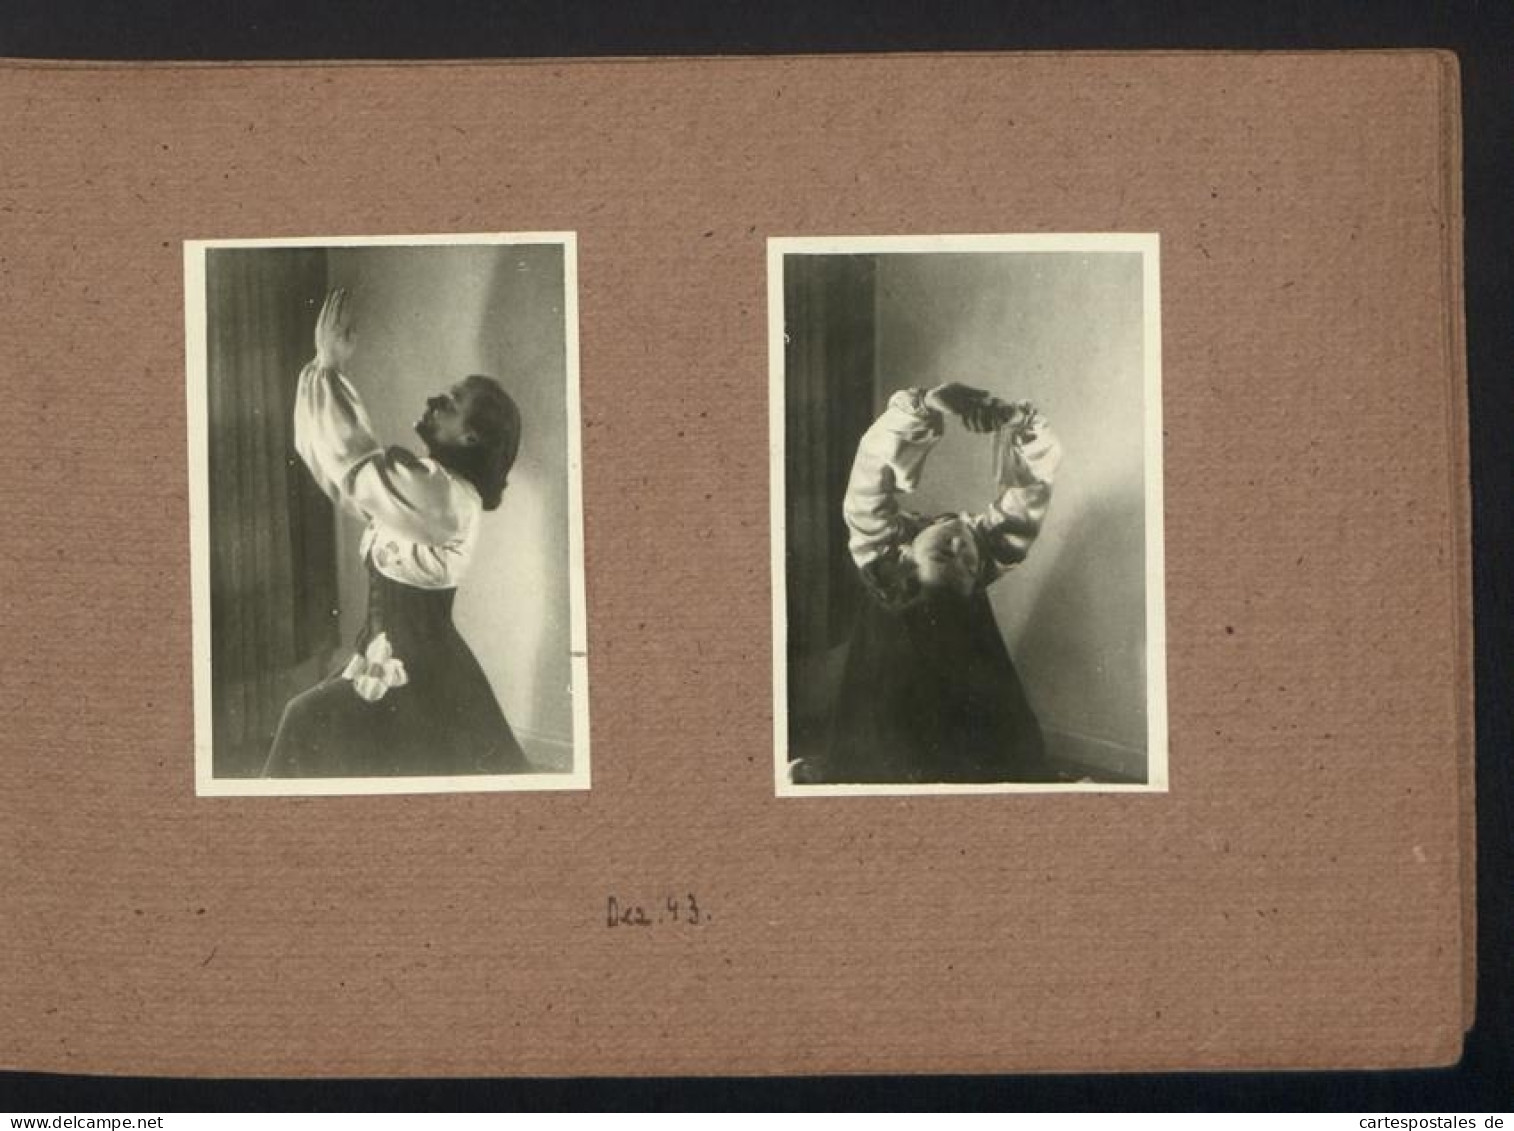 Fotoalbum mit 50 Fotografien, Ausdruckstanz / Frauen Tanzgruppe 1942, Ruth von Bullon, Choreografie, Theater 